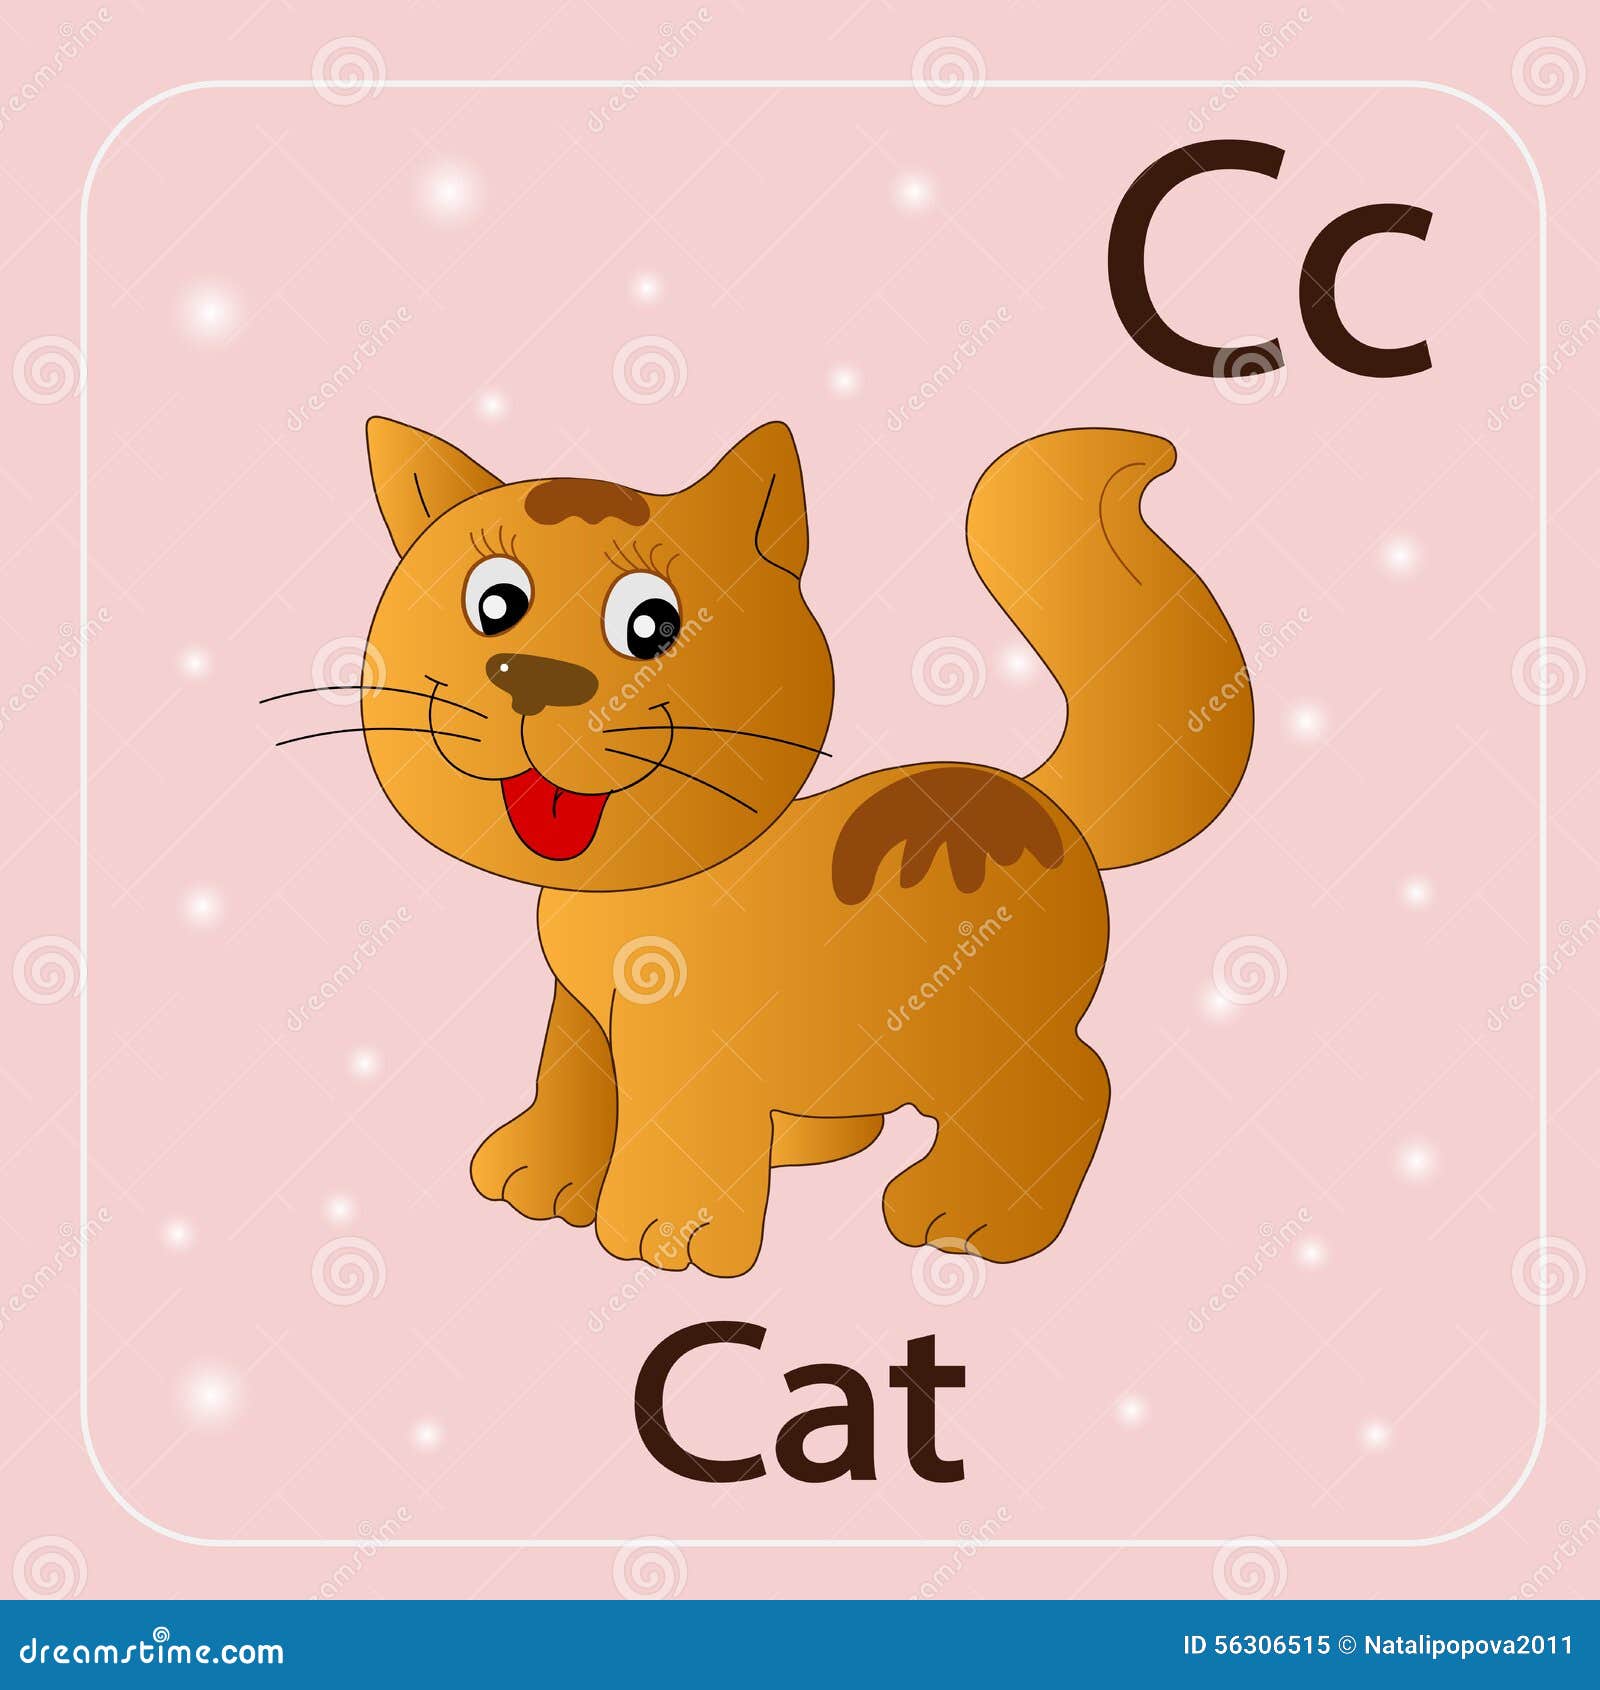 Кот на английском языке перевод. Карточка на английском языке кошка. Кошка карточка для детей. Карточки с английскими словами Cat. Карточки со словами на английском для детей кошка.